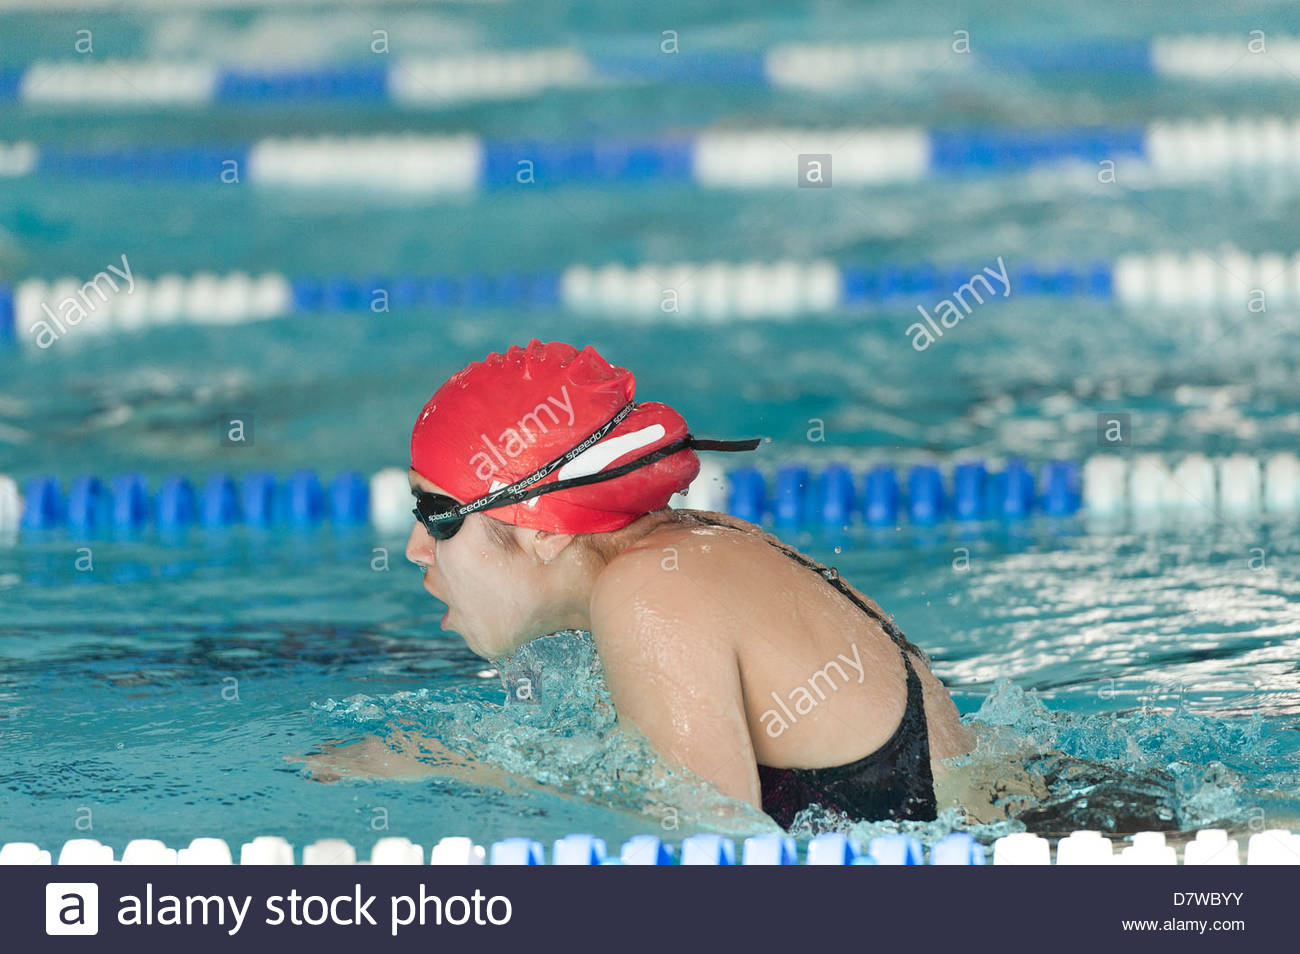 course de natation piscine de competition nationale brasse avec film de l eau de piscine bord arriere du bras vertical d7wbyy